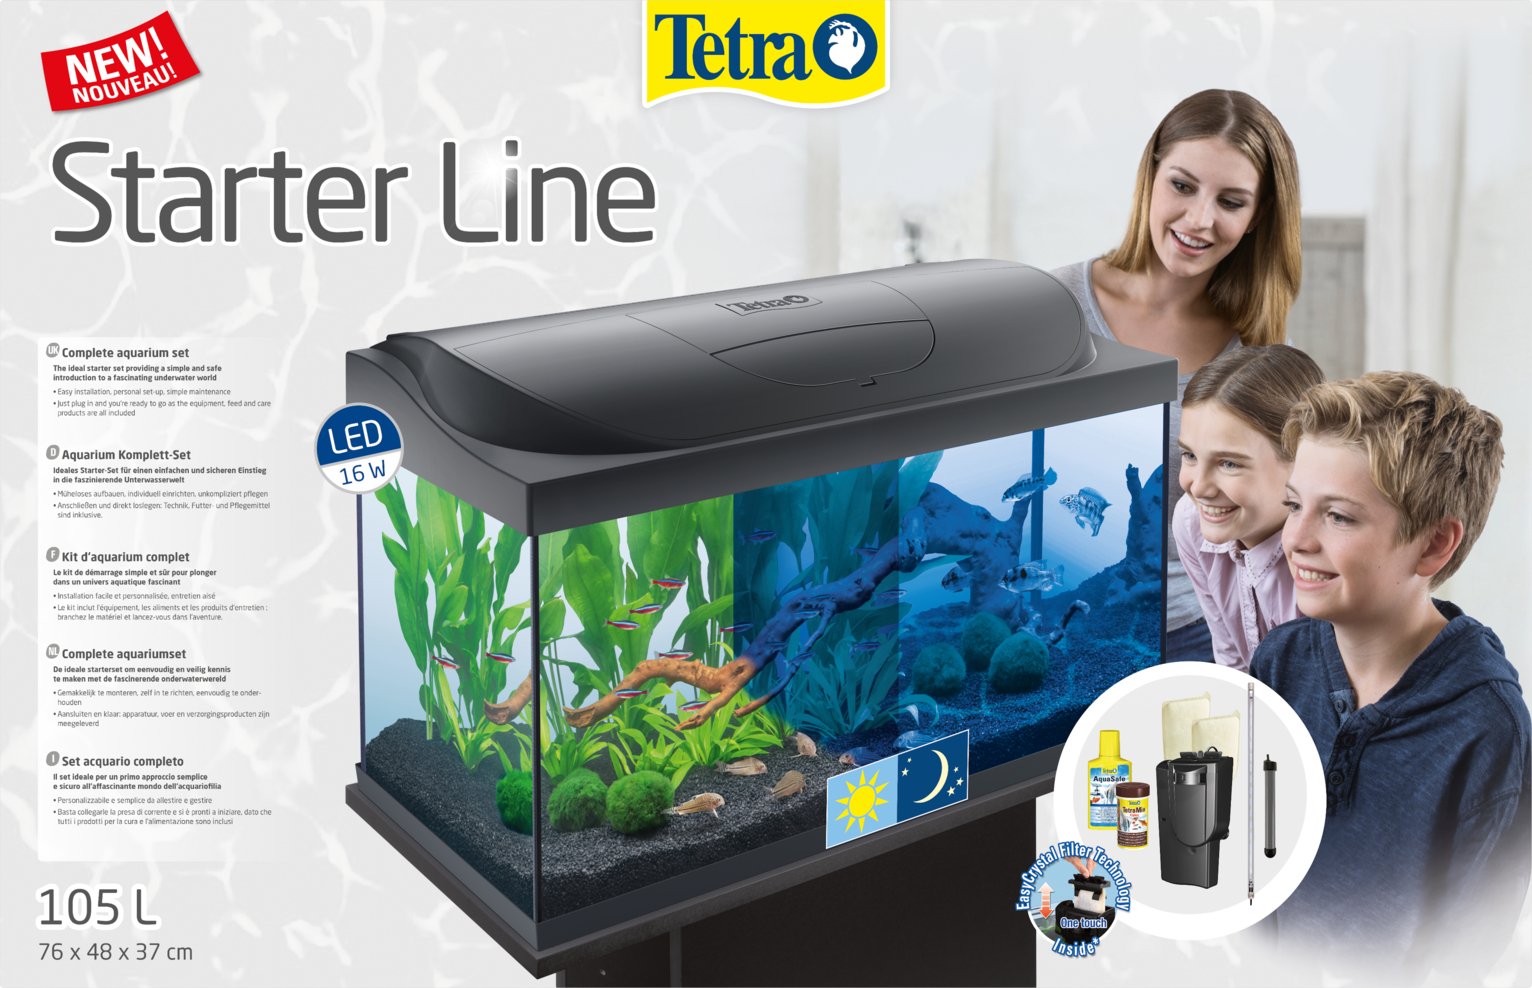 Tetra Starter Line 105L LED Fish Tank